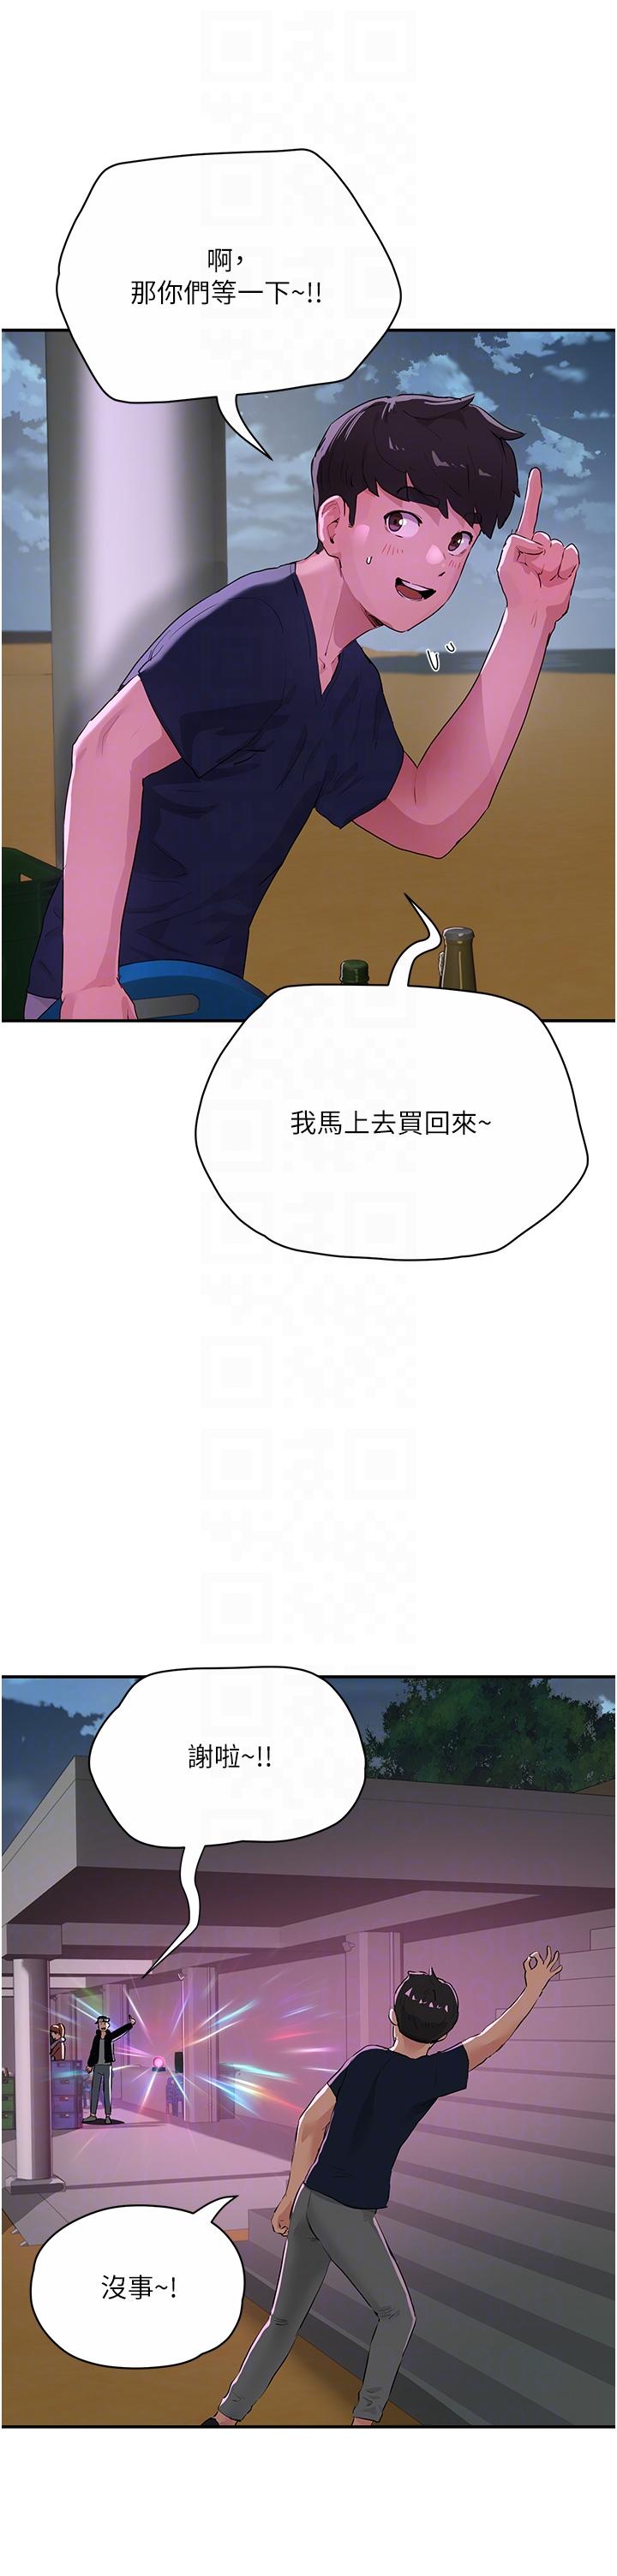 韩国污漫画 夏日深處 第52话-火热的party night 34